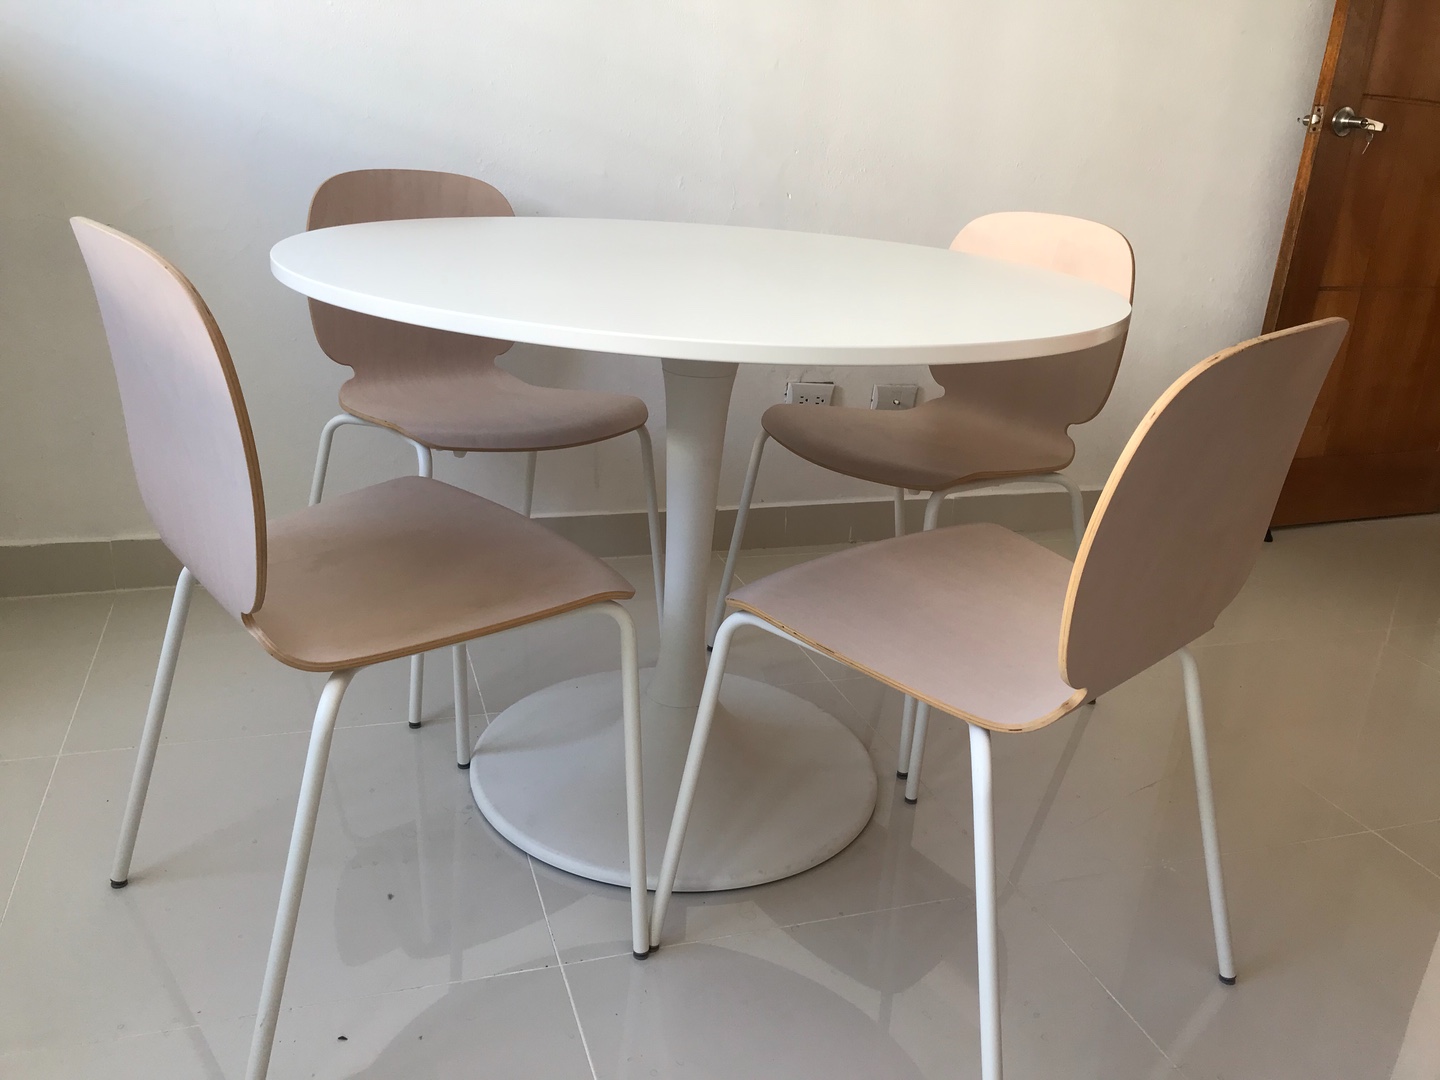 muebles y colchones - Comedor / mesa de reuniones IKEA
